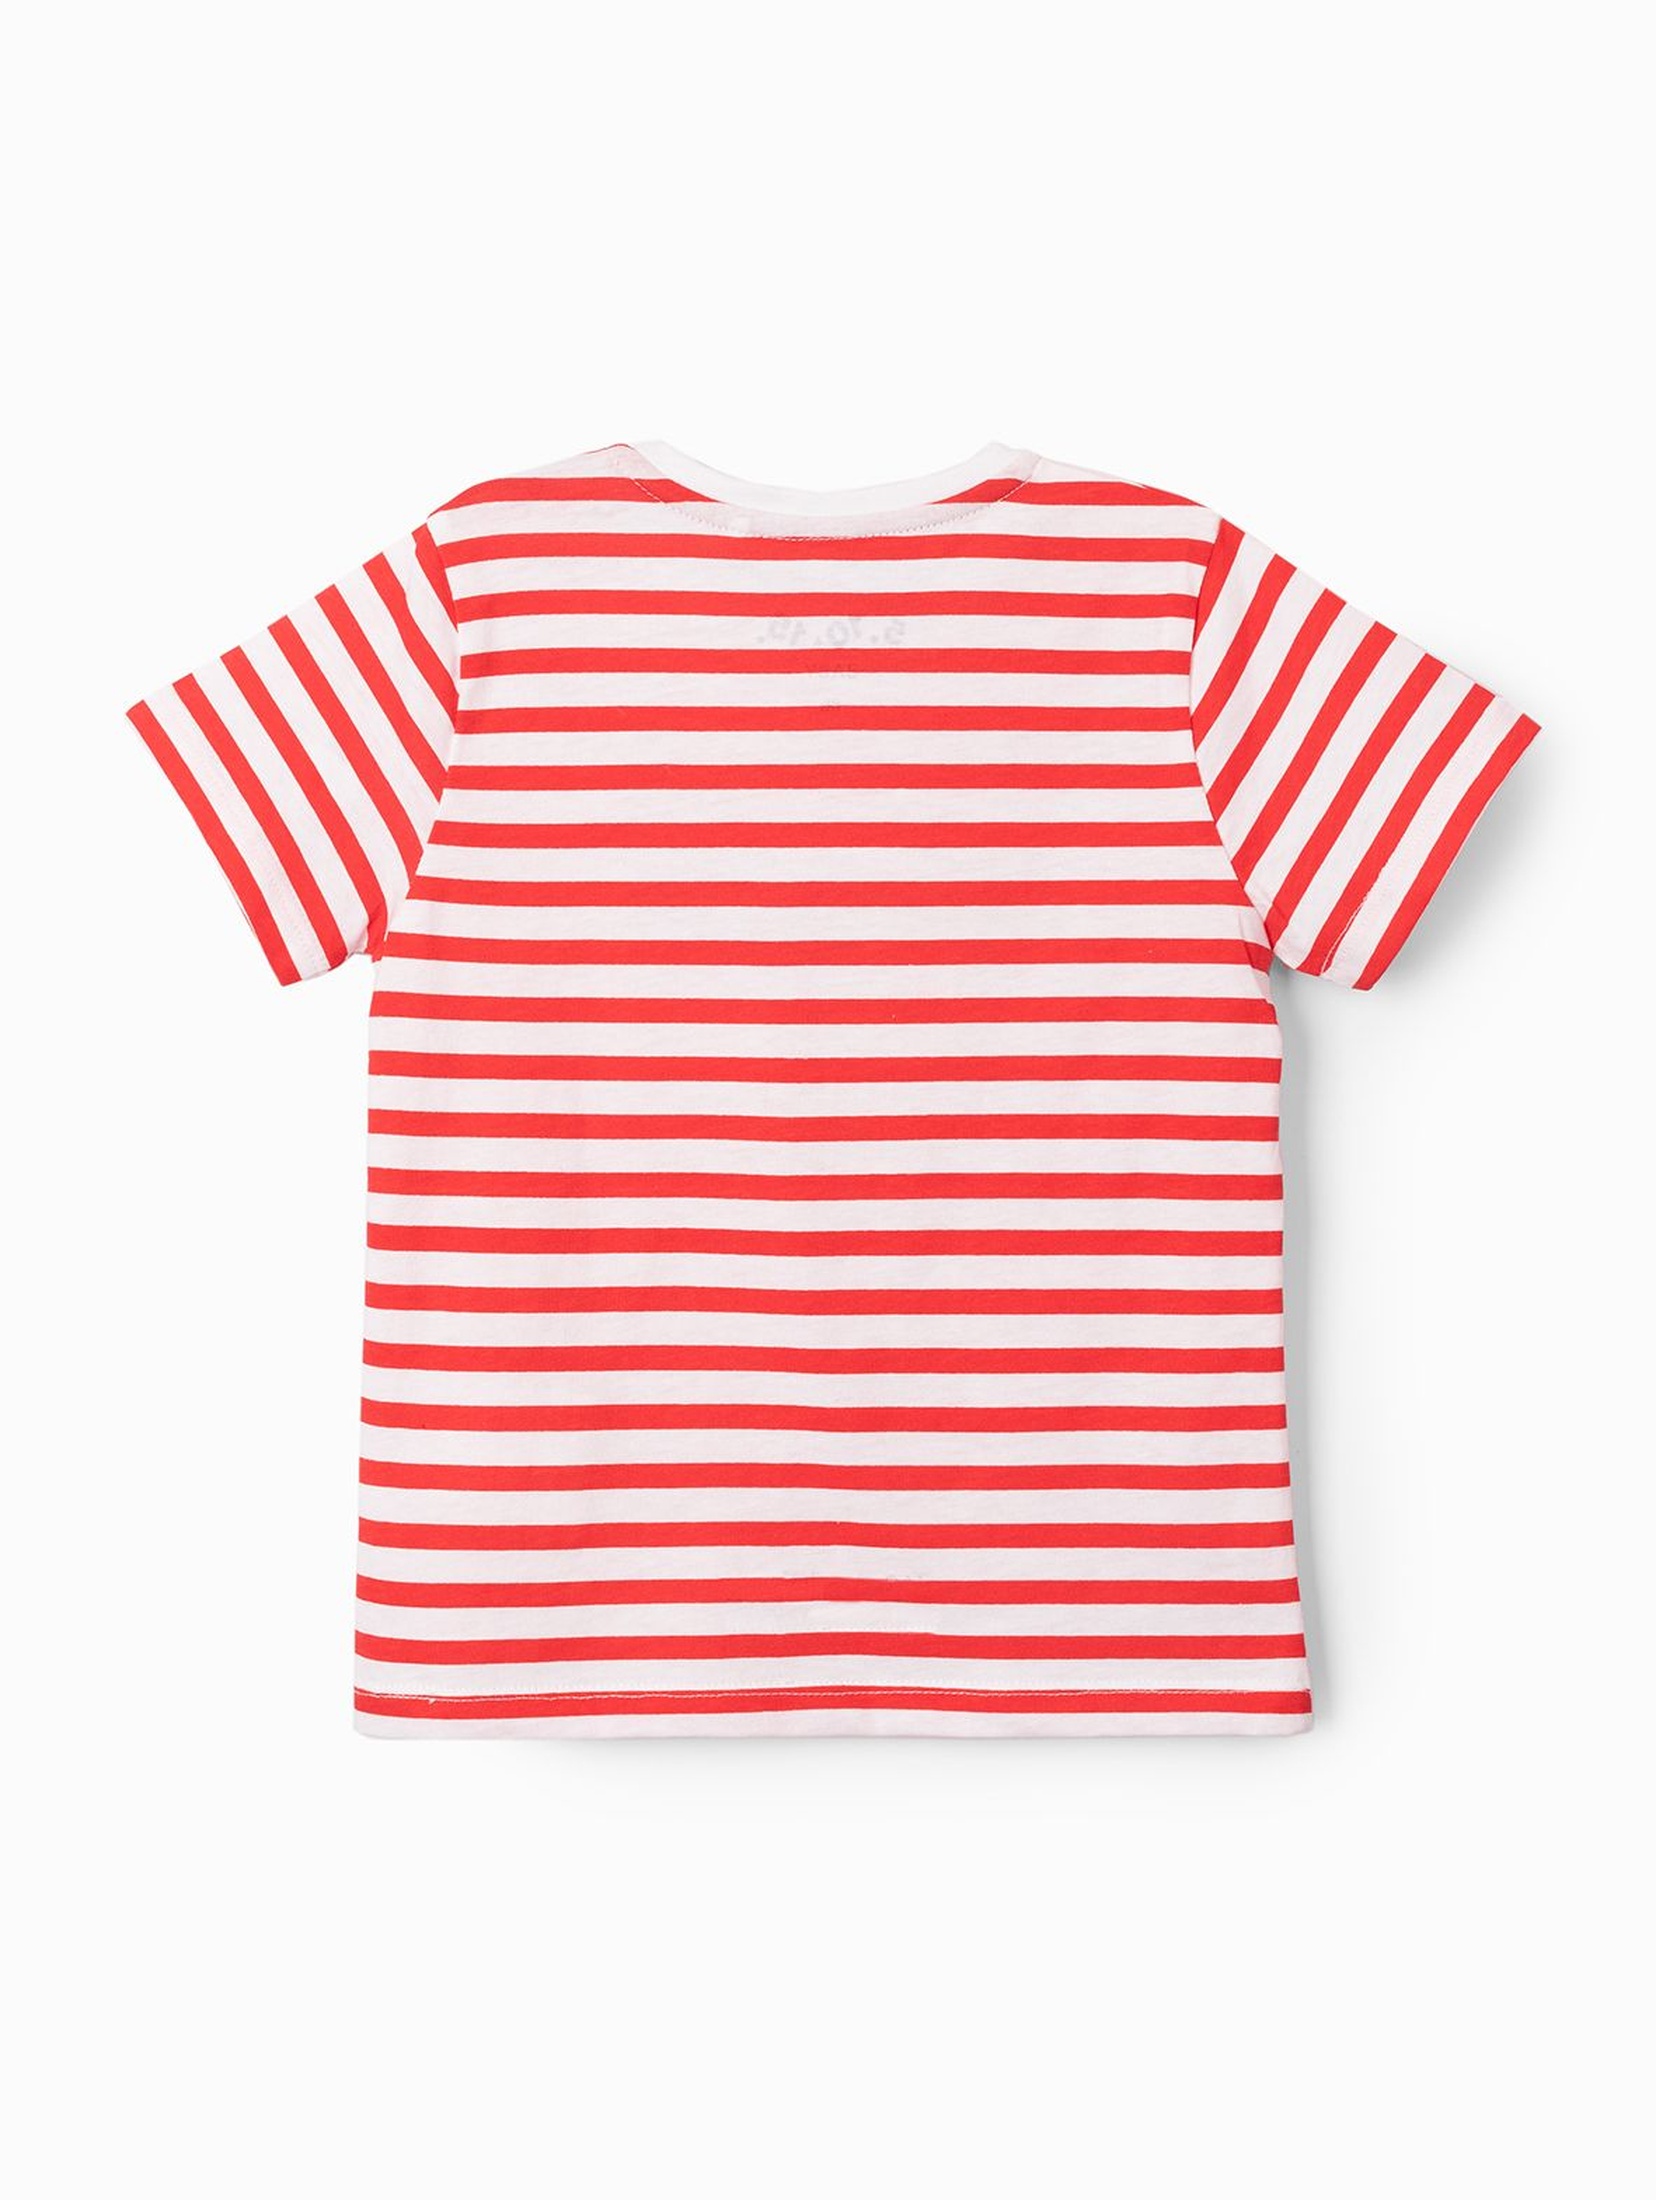 T-shirt niemowlęcy w paski z napisem- Mini kapitan